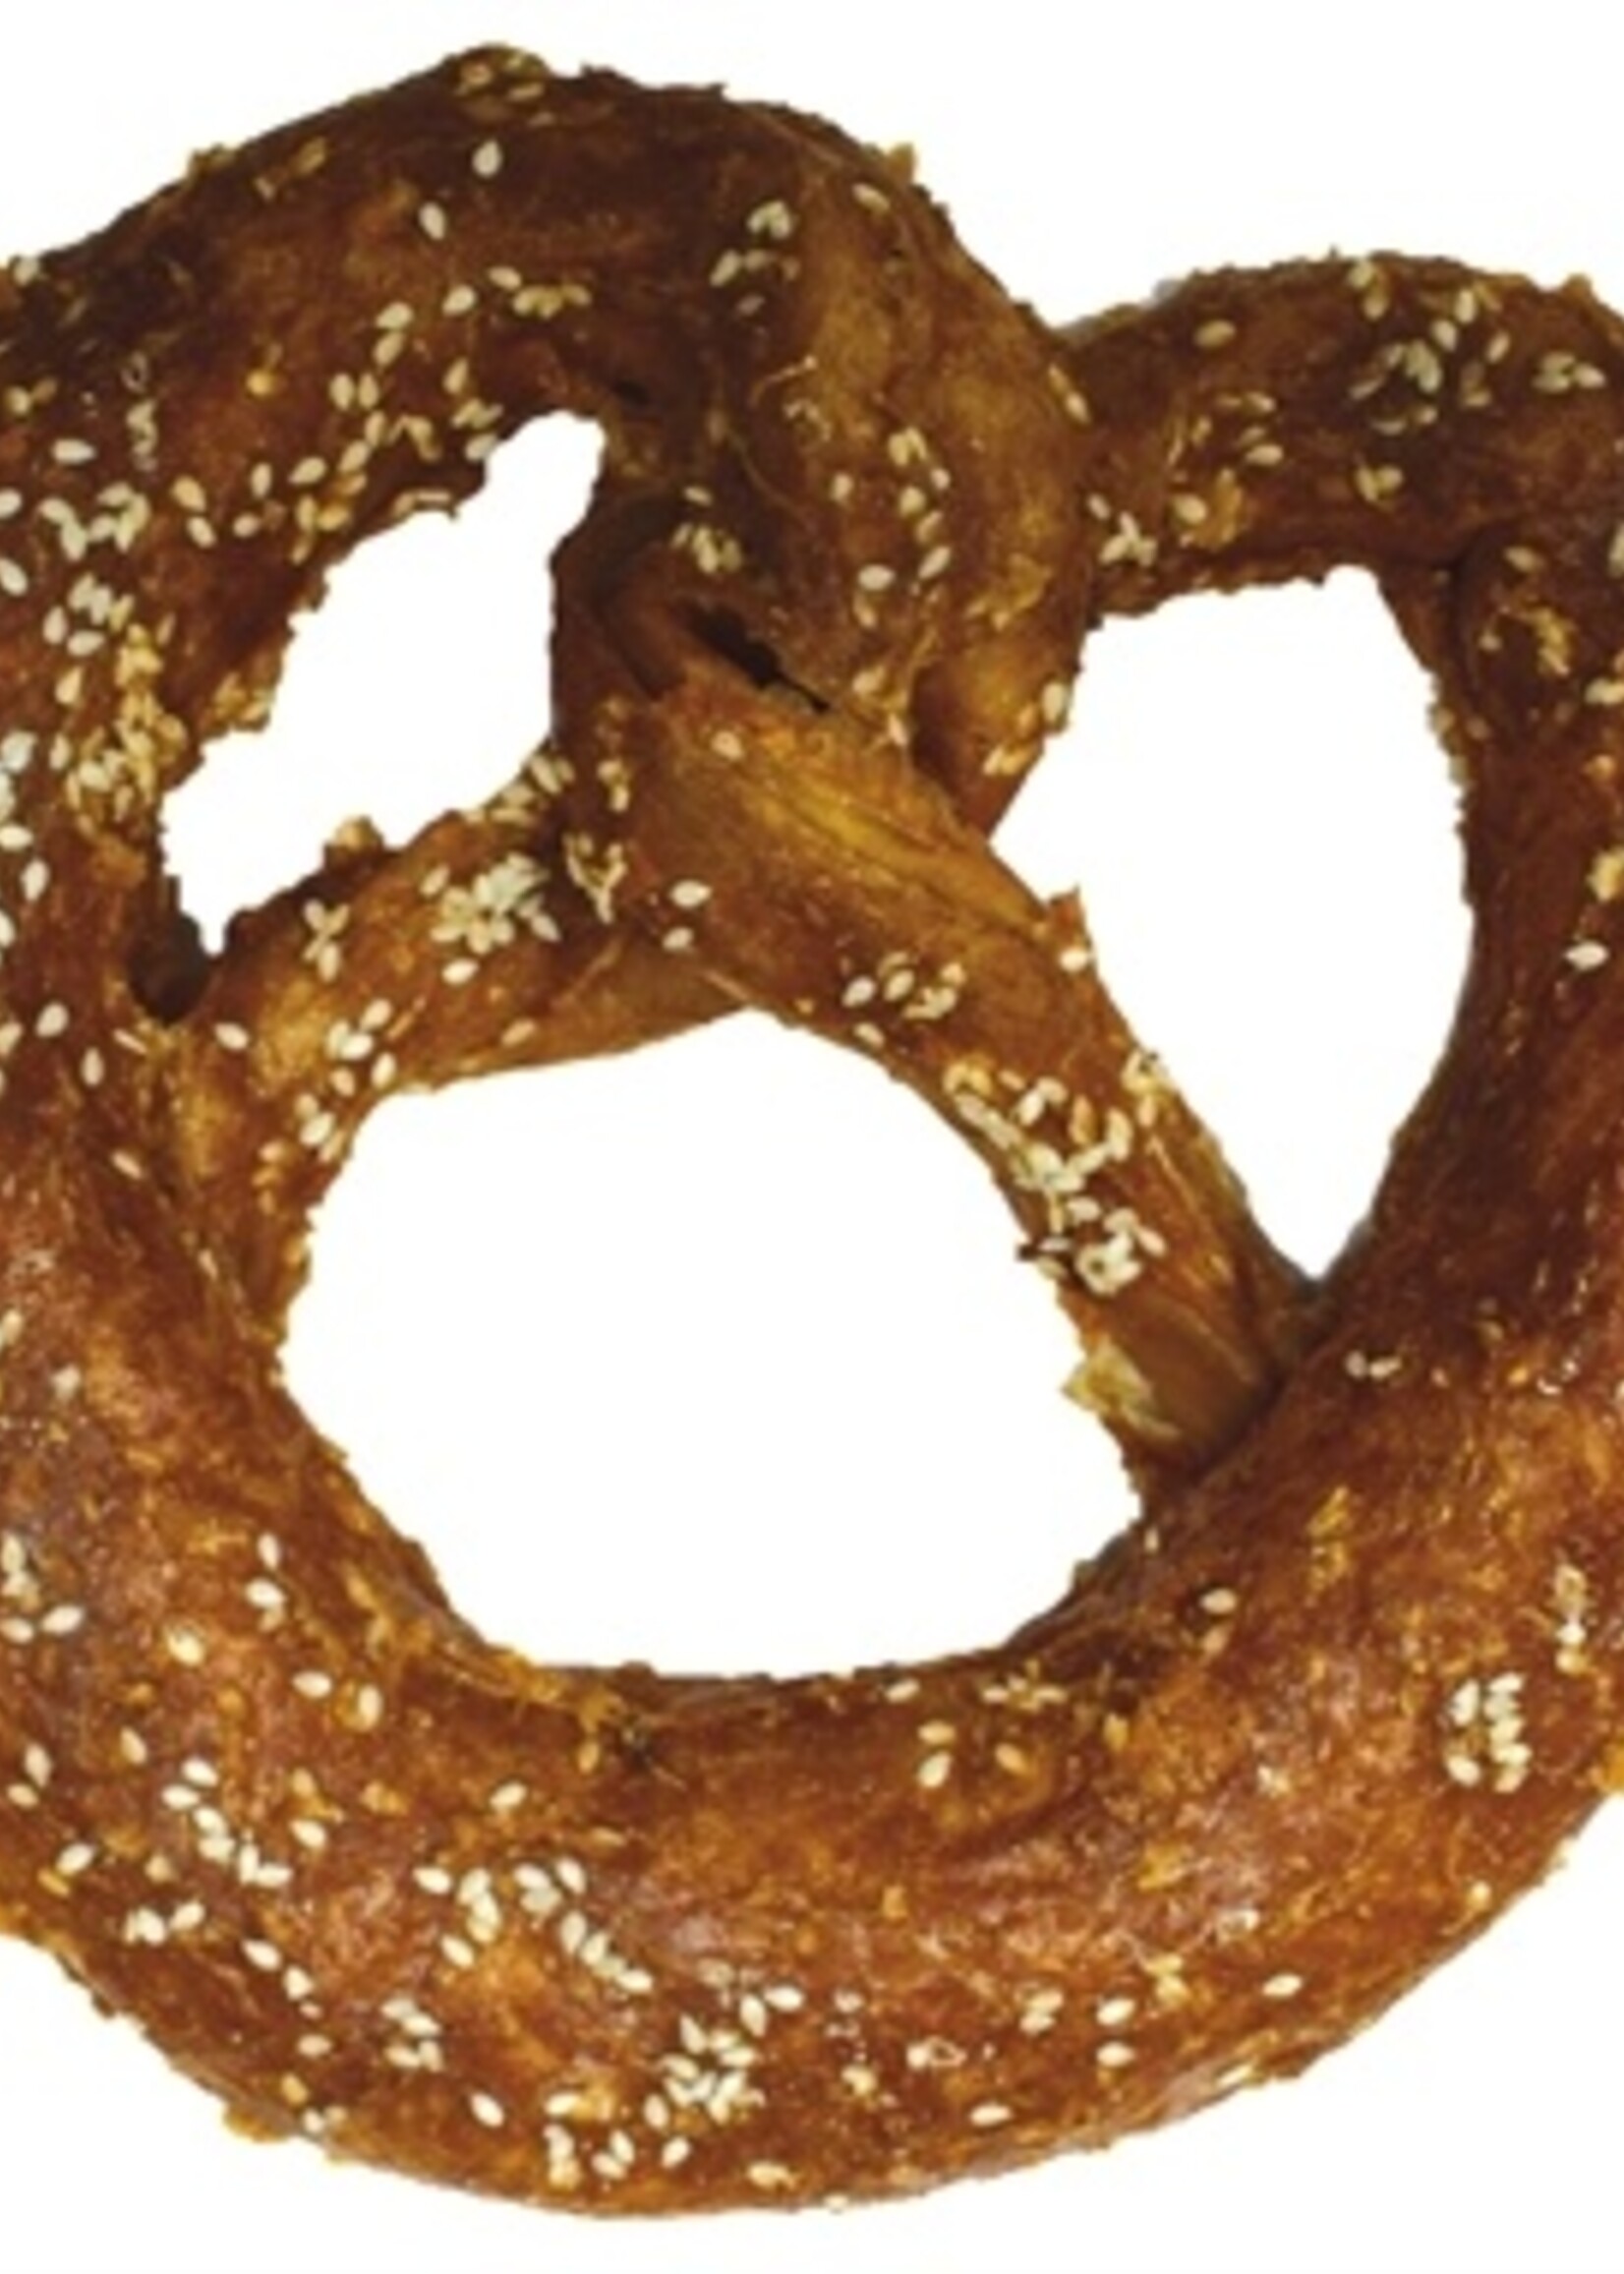 Croci Croci bakery pretzel kip